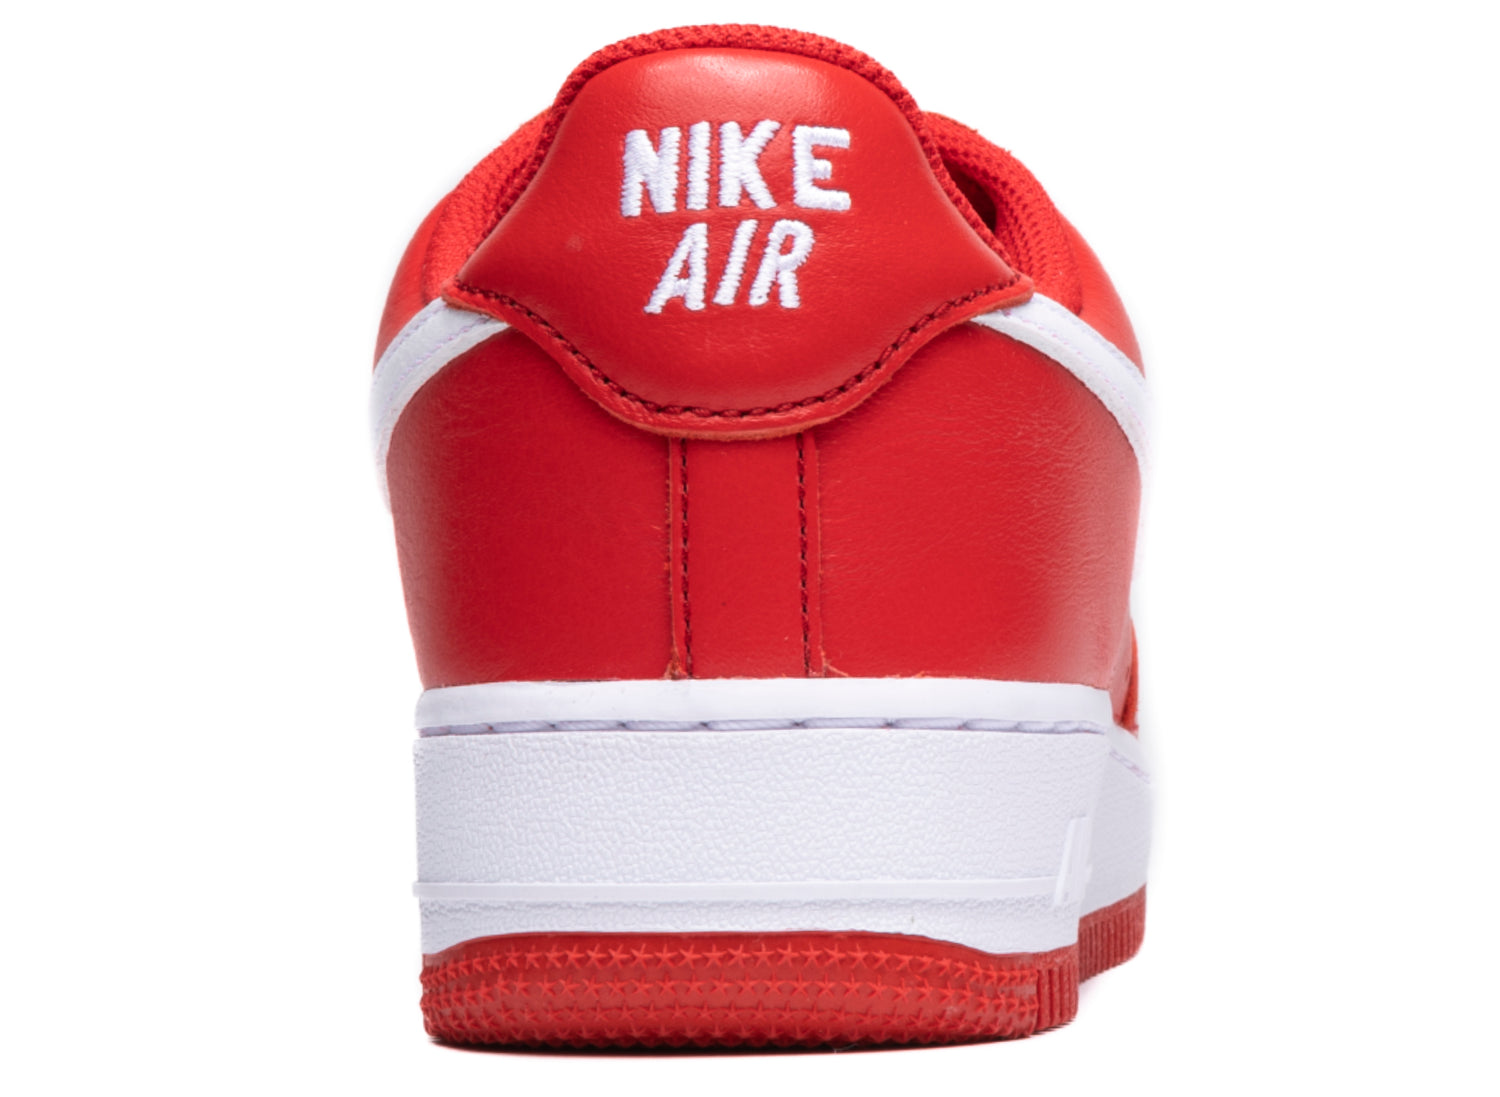 Nike Air Force 1 Low Retro QS Men's Shoes, University